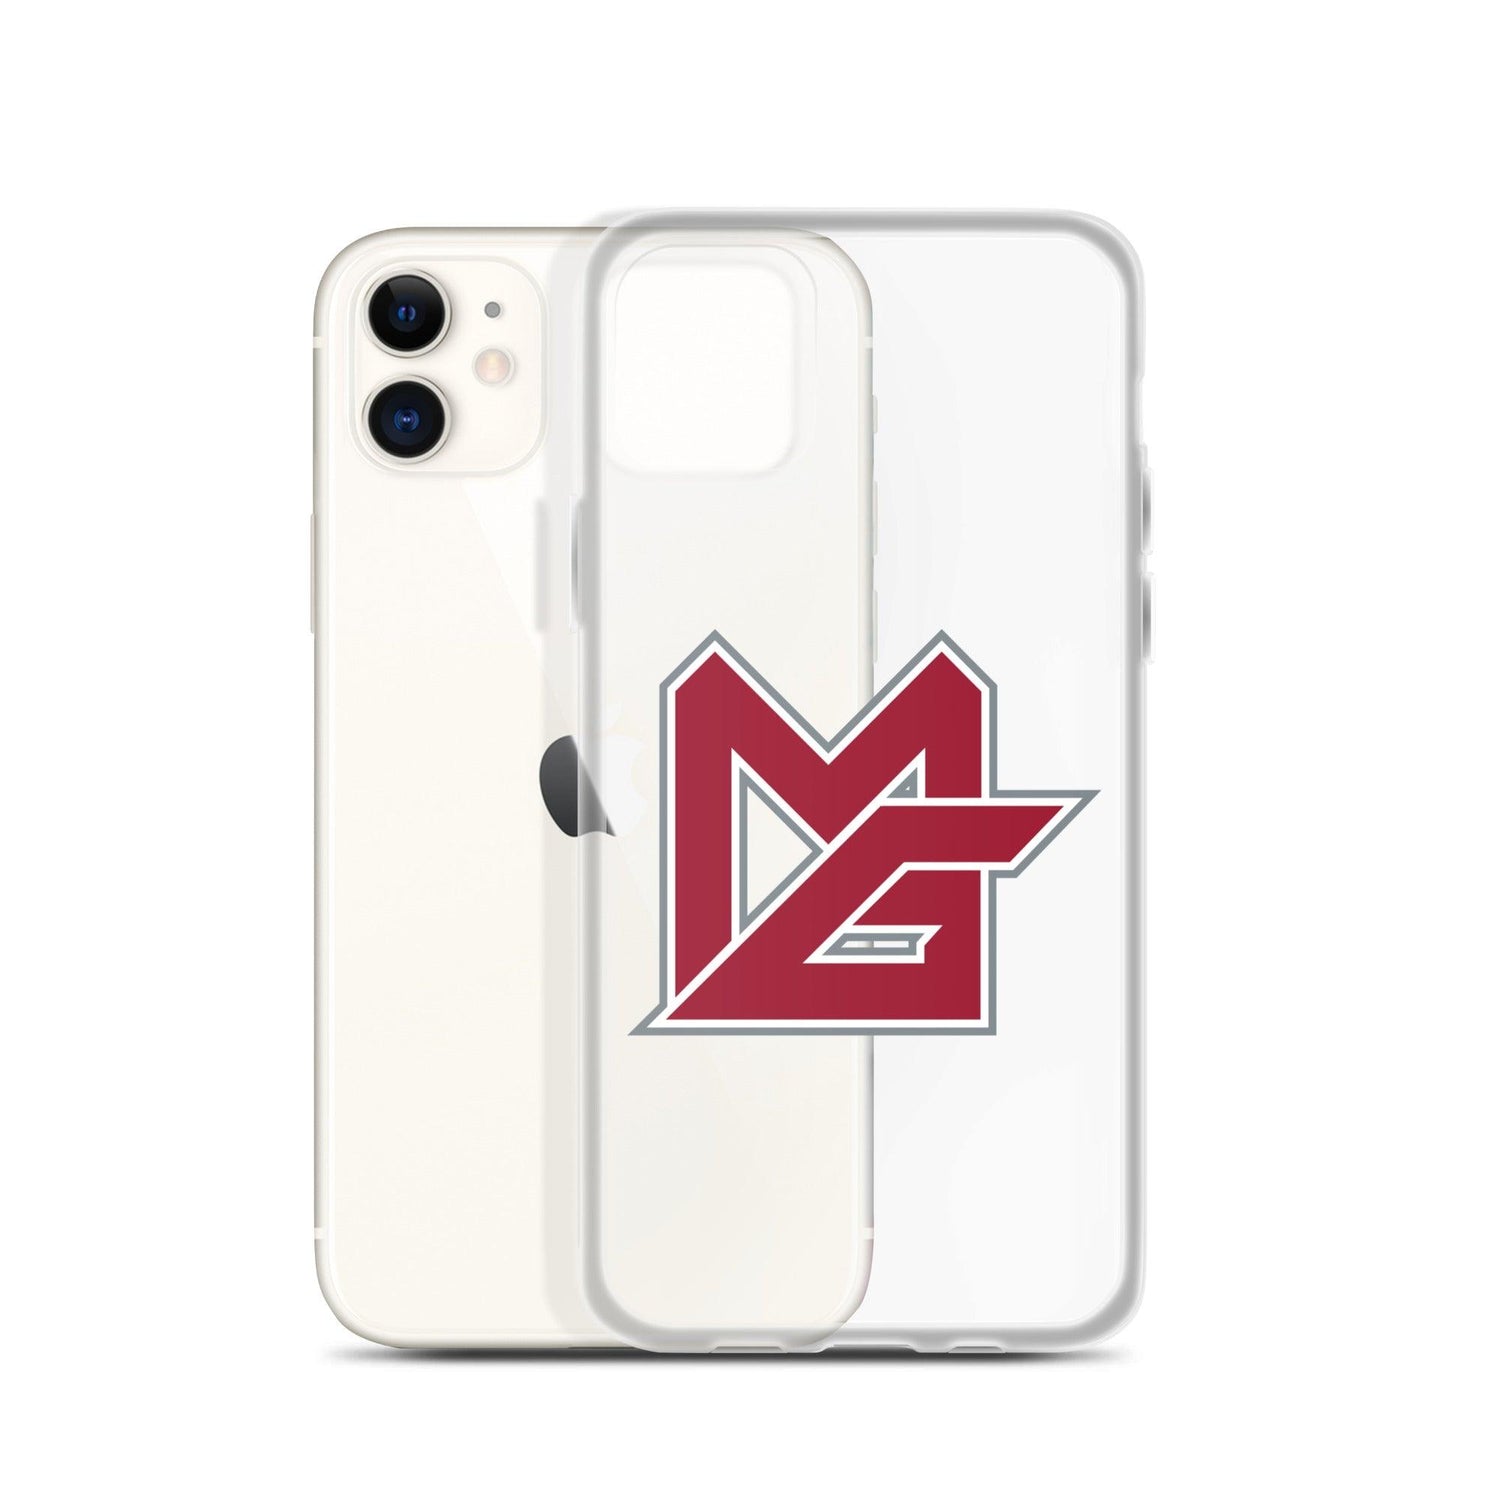 Monkell Goodwine "MG" iPhone Case - Fan Arch